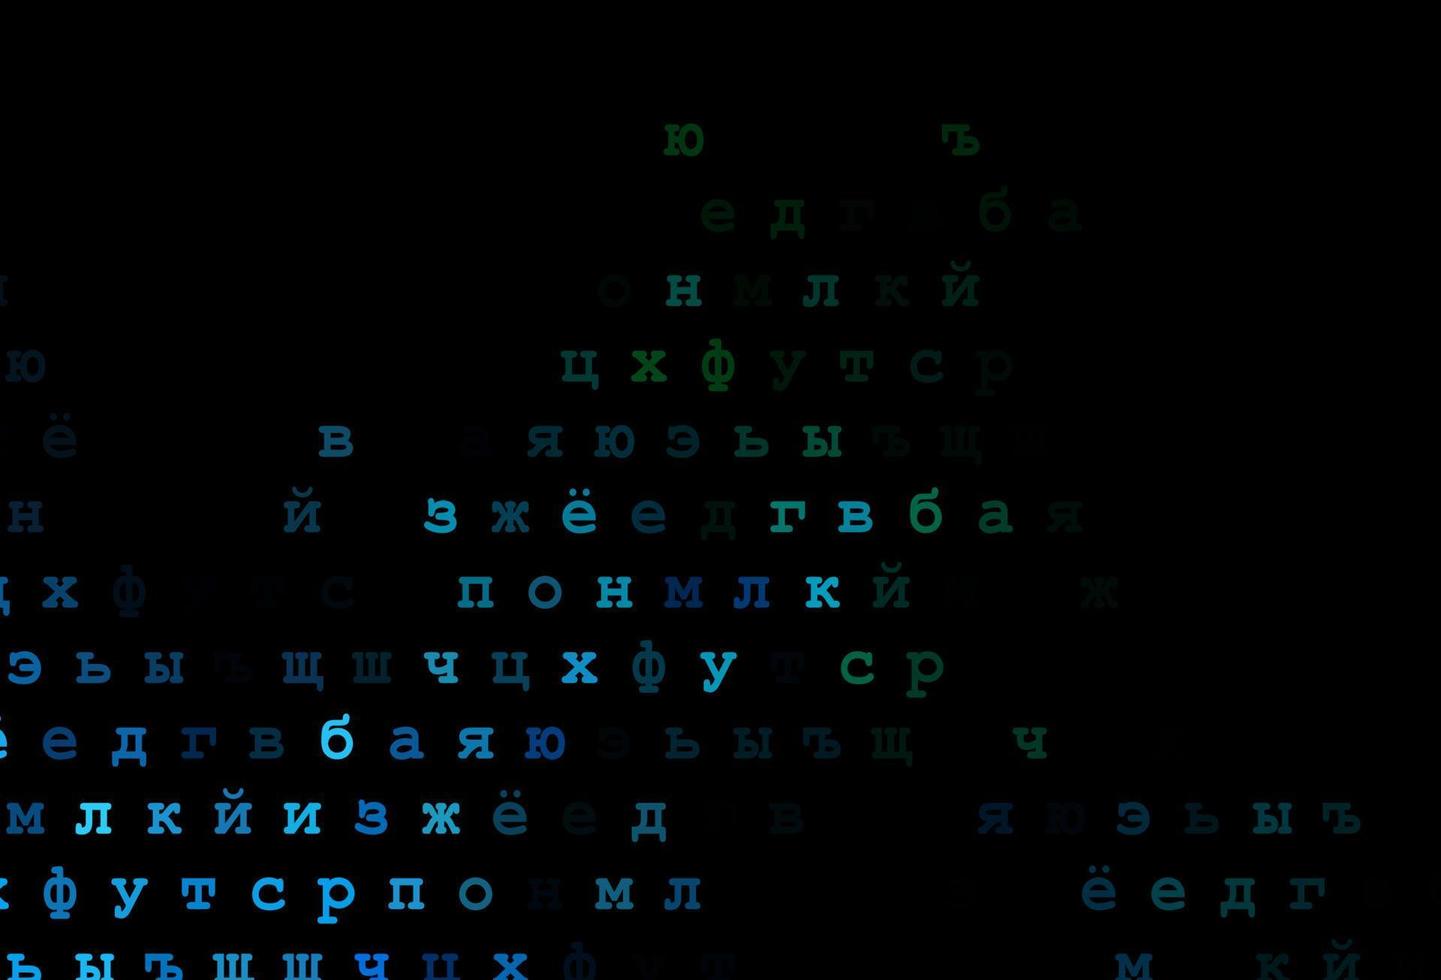 modelo de vetor azul escuro e verde com letras isoladas.